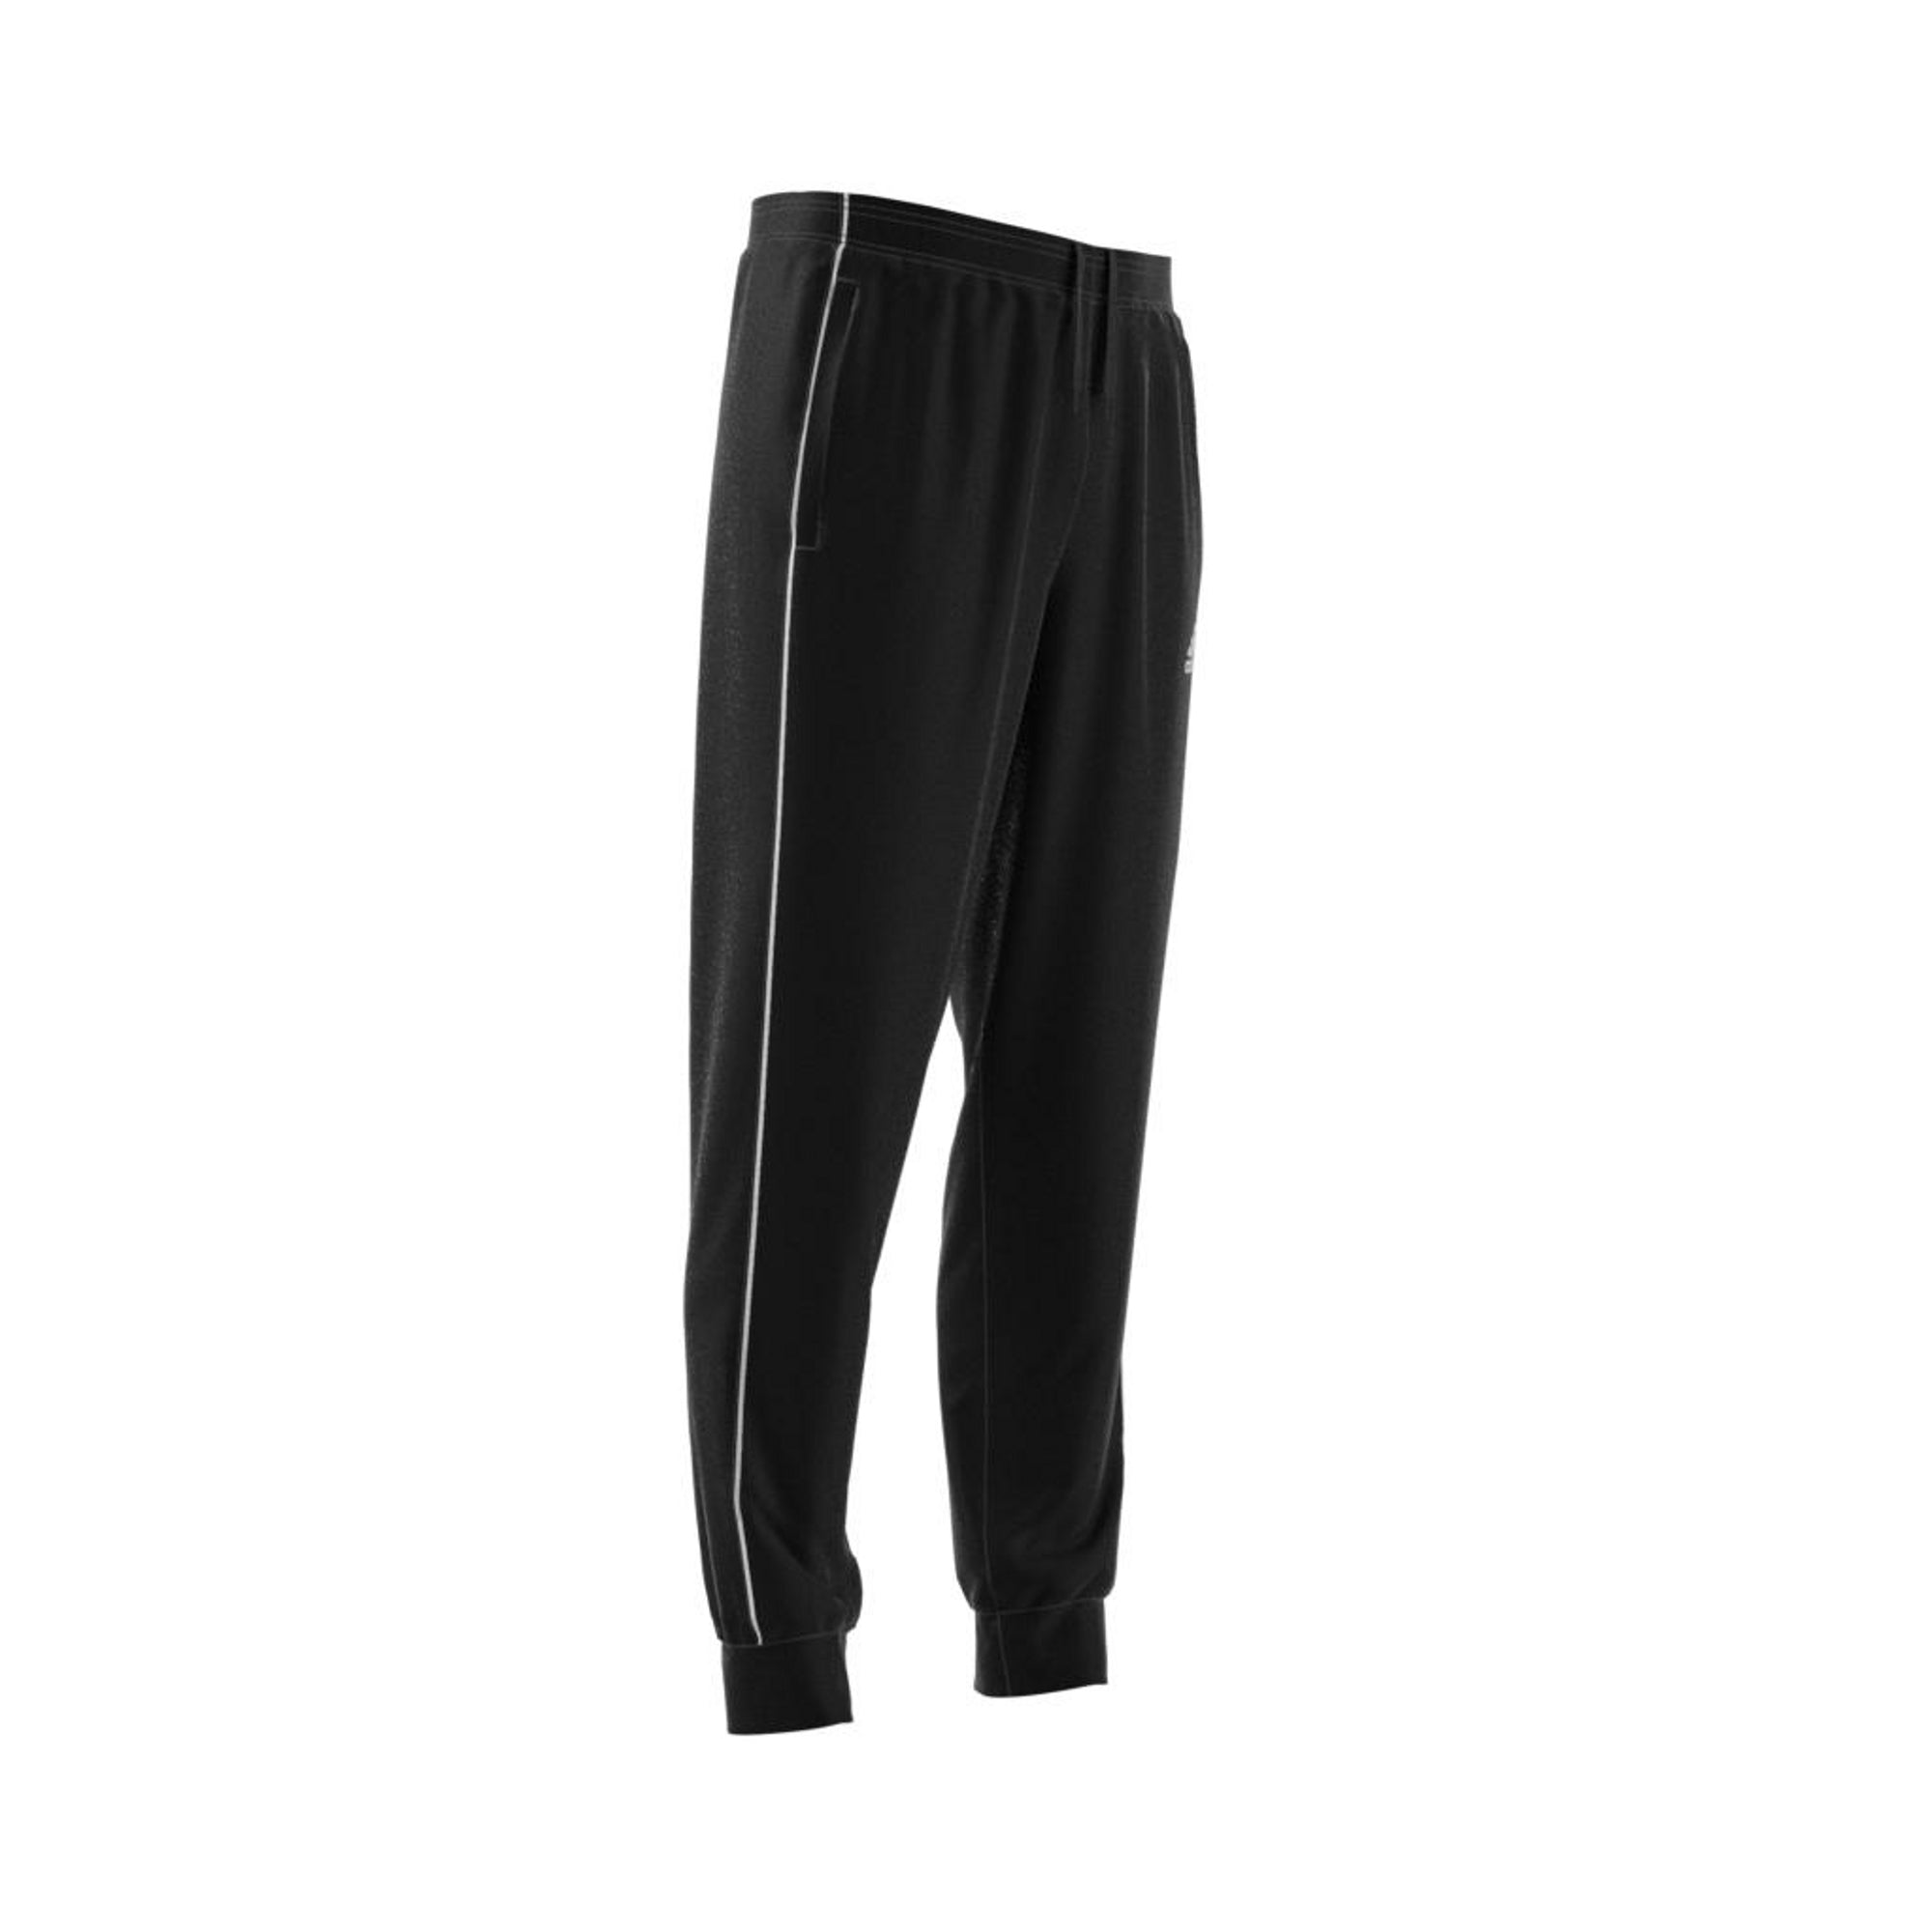 Pantalones Hombre Adidas Core 18 hombre algodón - CE9074 - negro - depor8